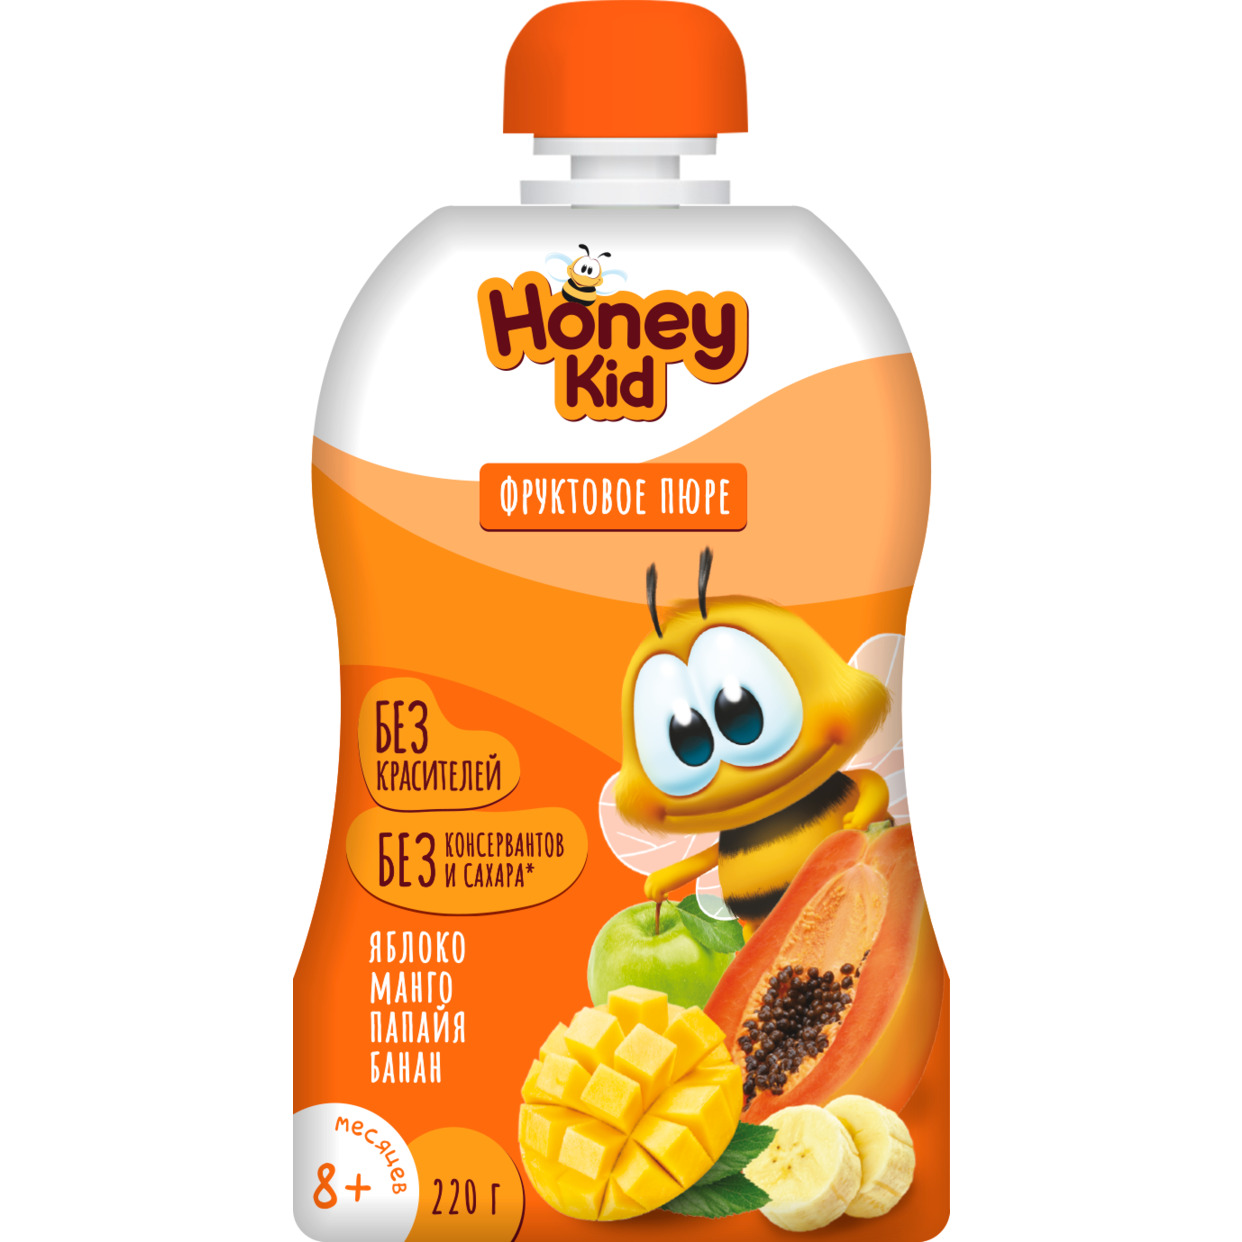 Пюре "Honey Kid" из яблок, манго, папайи и бананов для детского питания для детей раннего возраста гомогенизированное, стерилизованн ое, 220 г с 8 месяцев по акции в Пятерочке